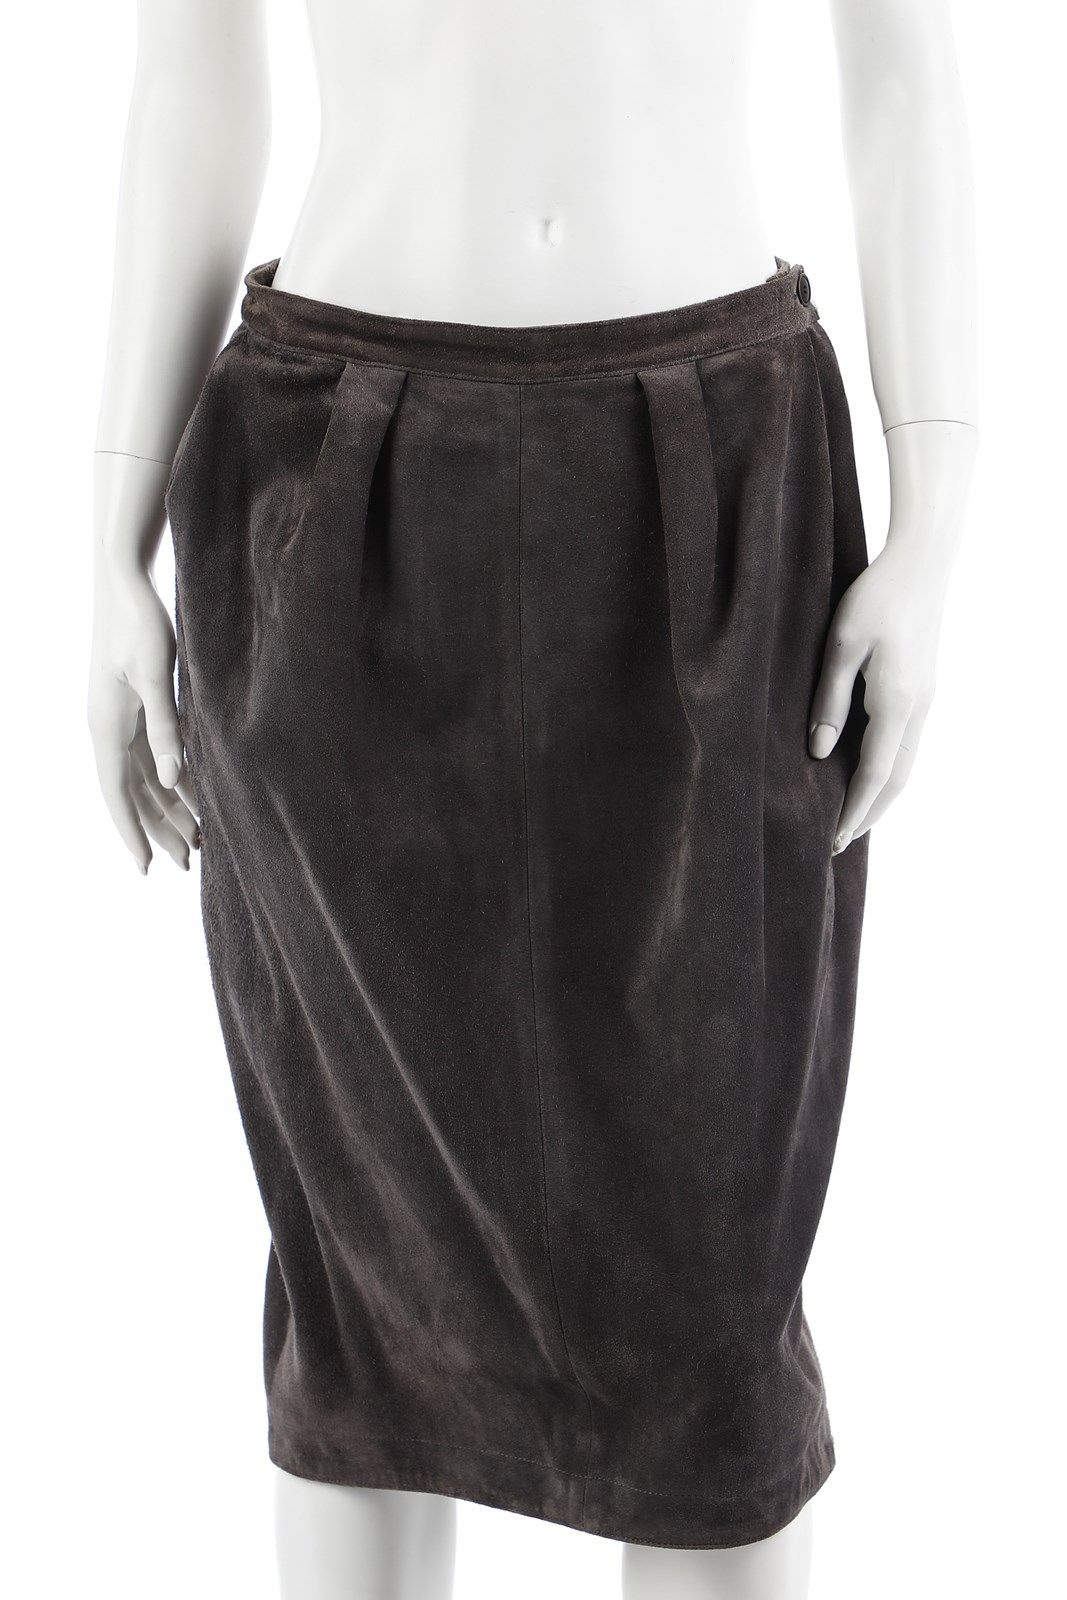 YVES SAINT LAURENT Gray suede leather midi skirt. Jupe midi en cuir velours gris&hellip;